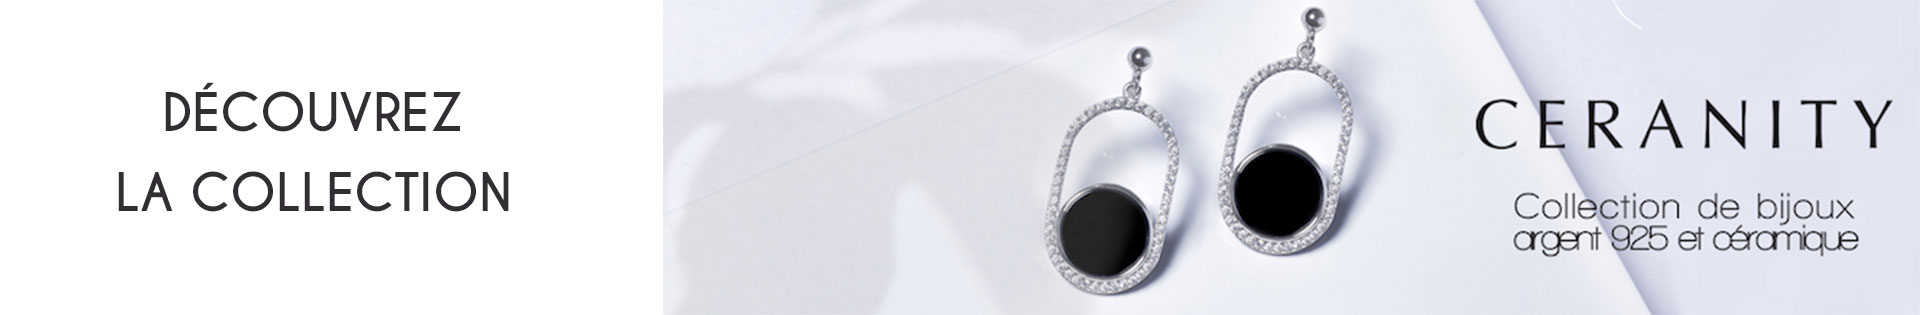 Marques de bijoux - Ceranity Silver - Boucles d'oreille